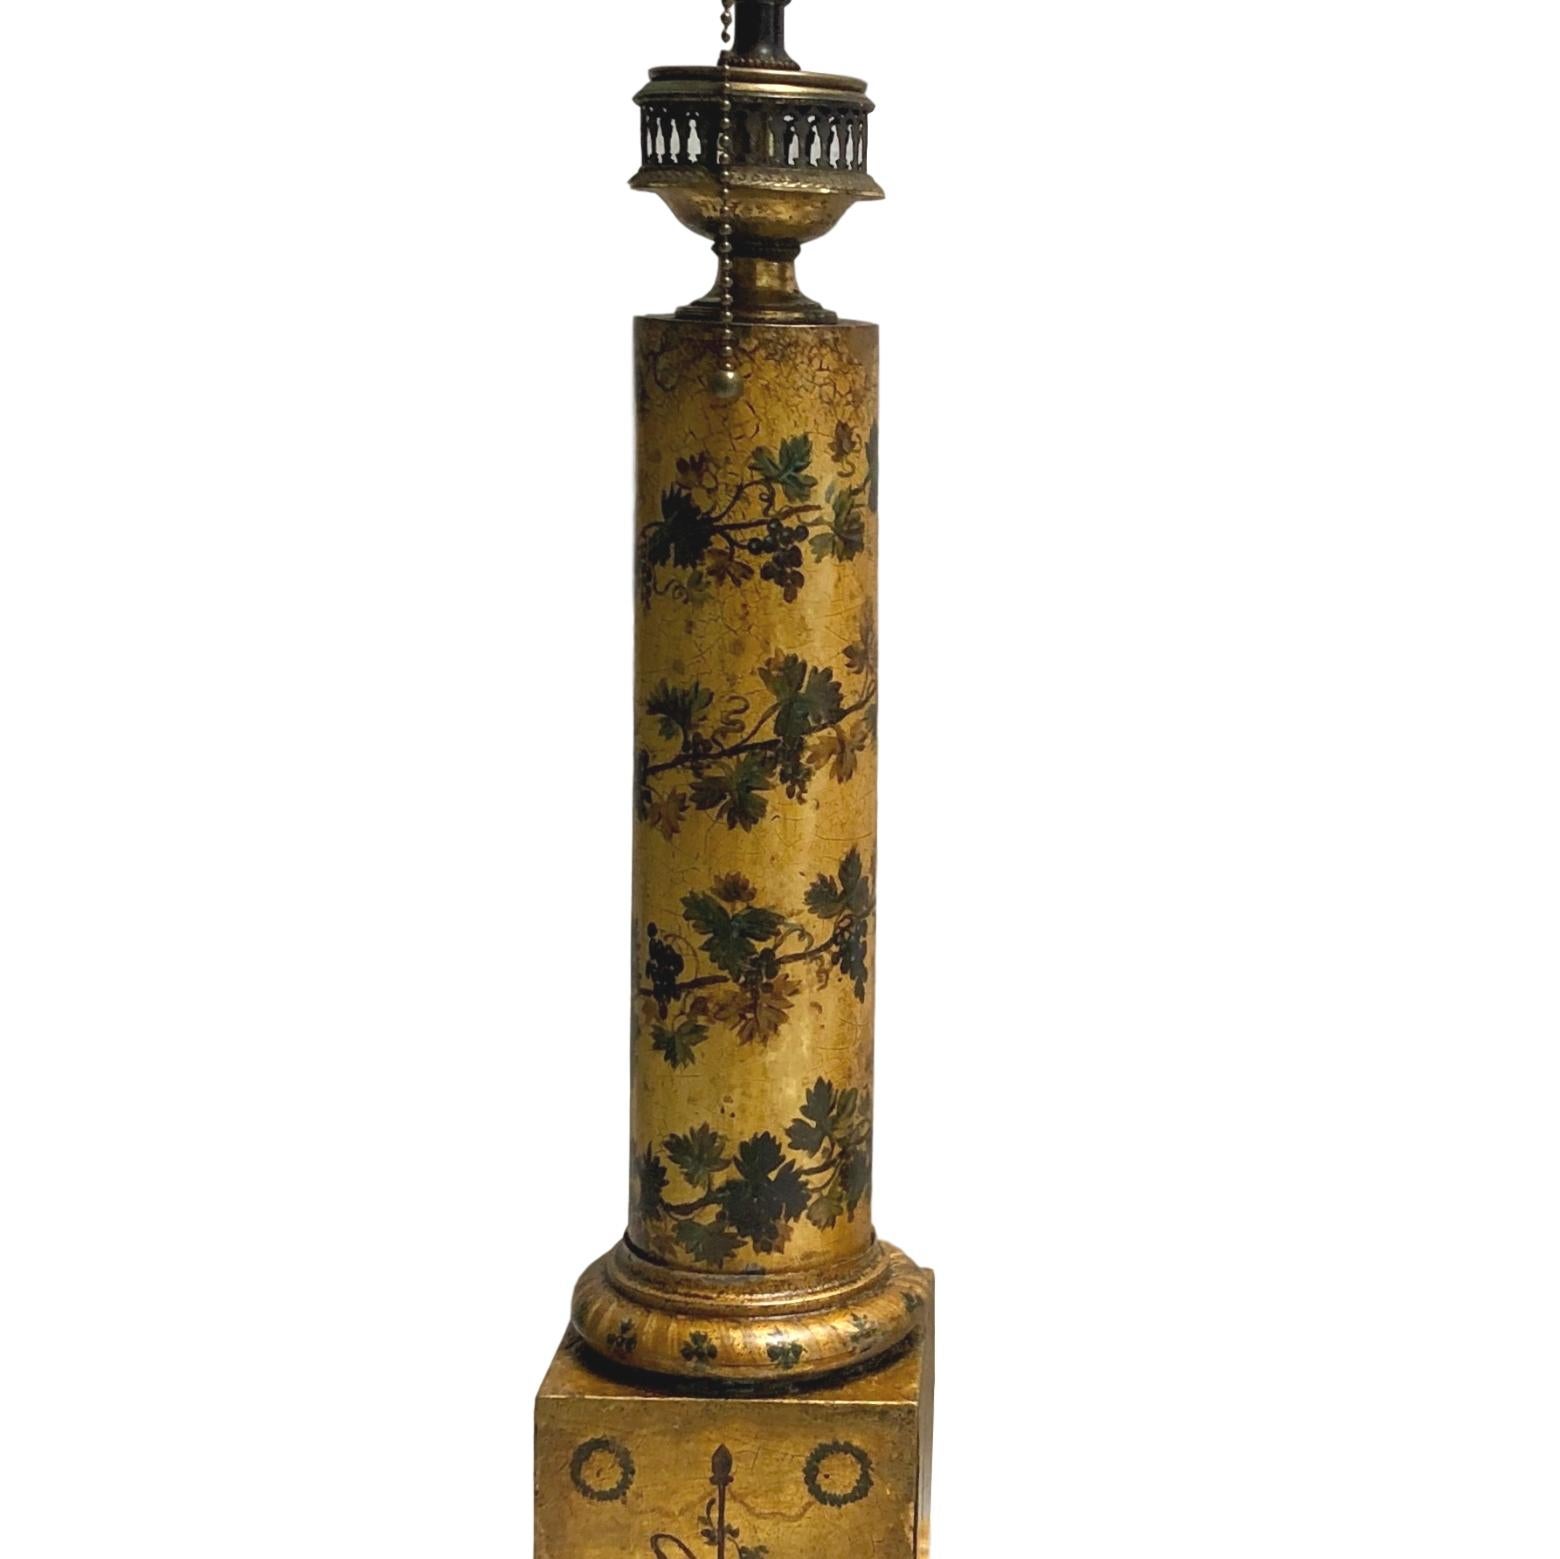 Zwei französische vergoldete und bemalte Troll-Lampen aus den 1920er Jahren mit Blattmotiv auf einem neoklassizistischen Säulenkörper.

Abmessungen:
Höhe des Körpers: 19,5